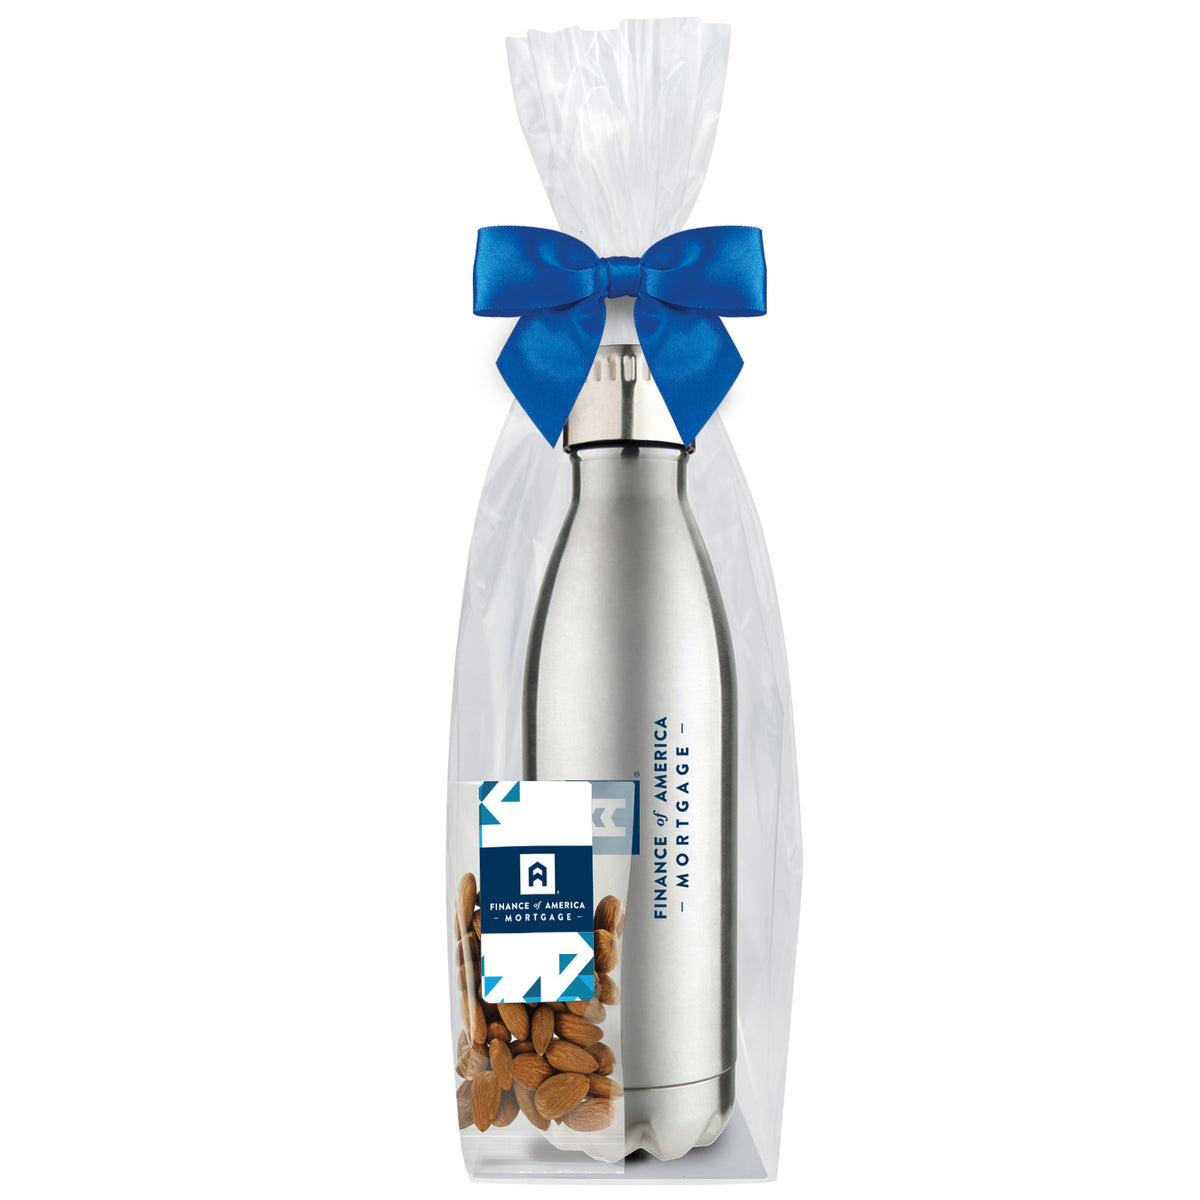 Water Bottle - 17 oz., Raw Almonds (2 oz. bag)